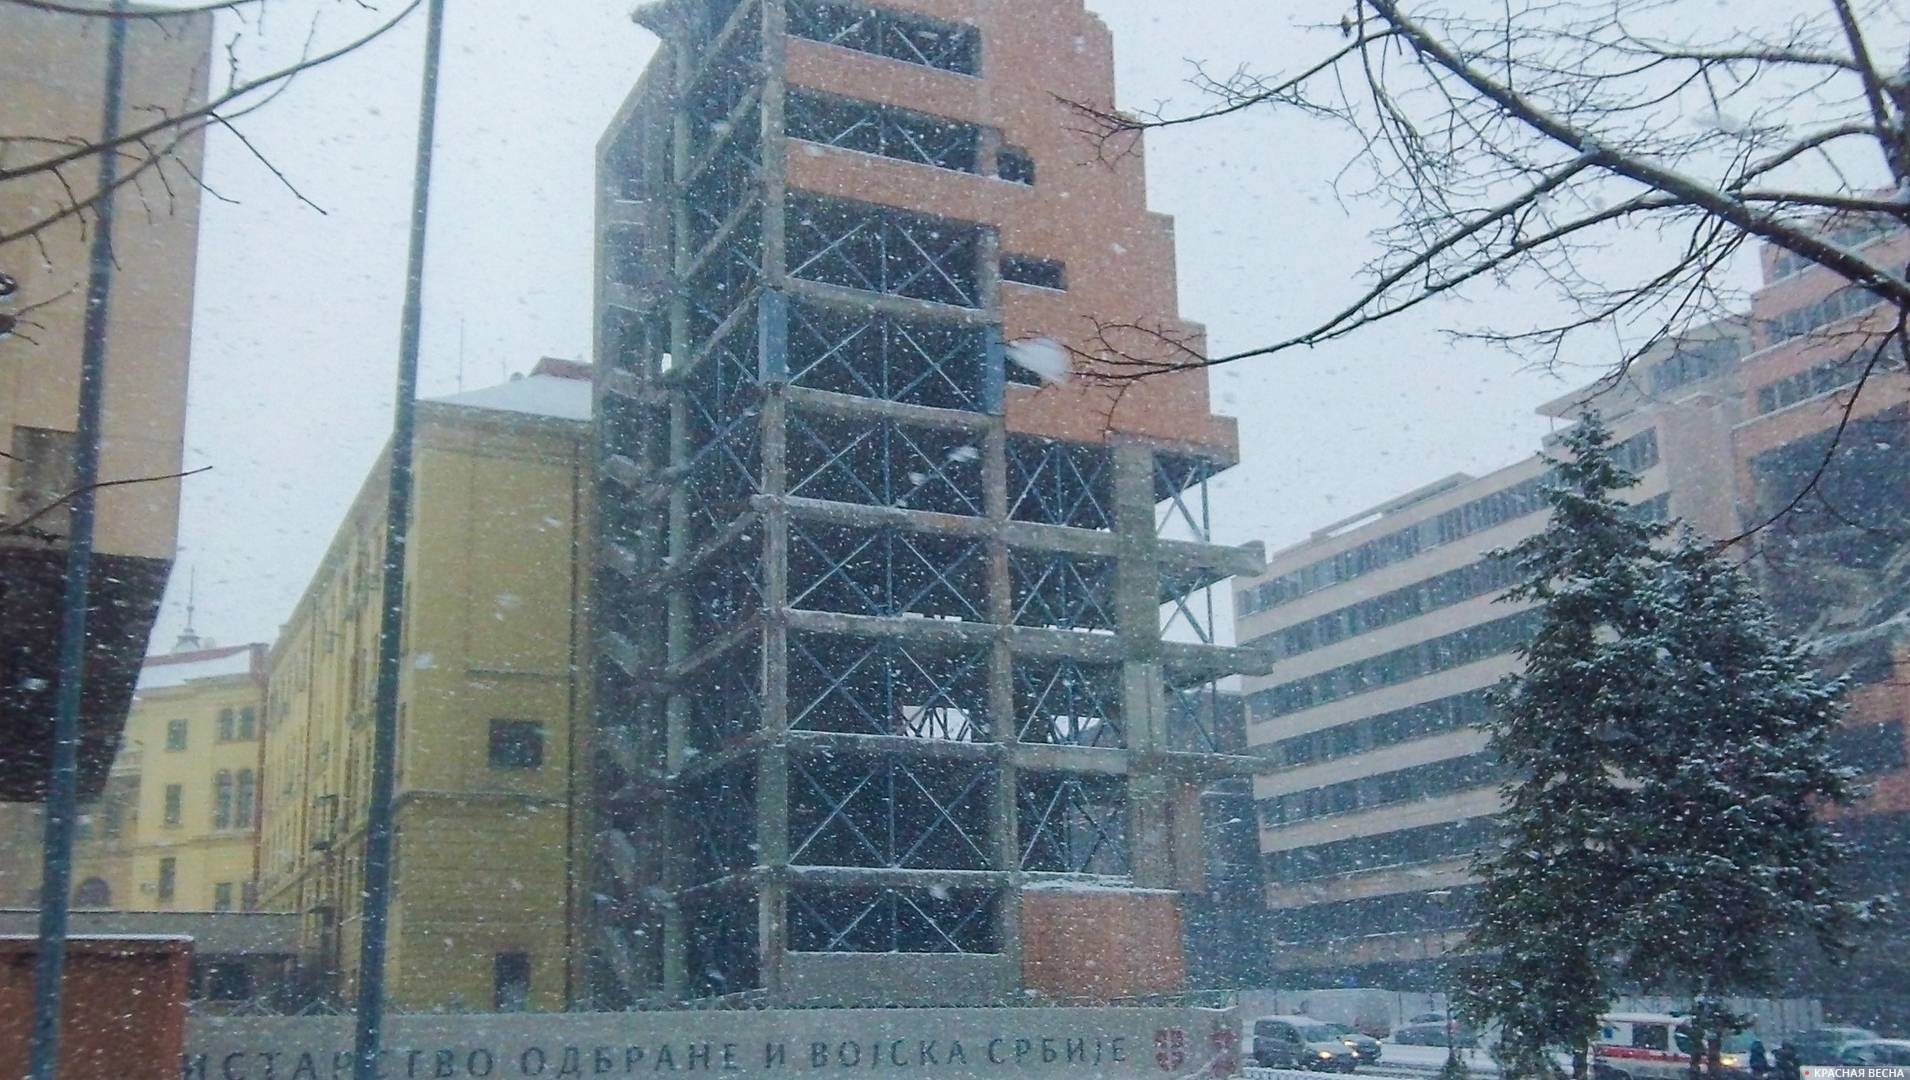 Разрушенный Главный штаб Вооруженных сил Сербии, Мемориал бомбардировкам НАТО